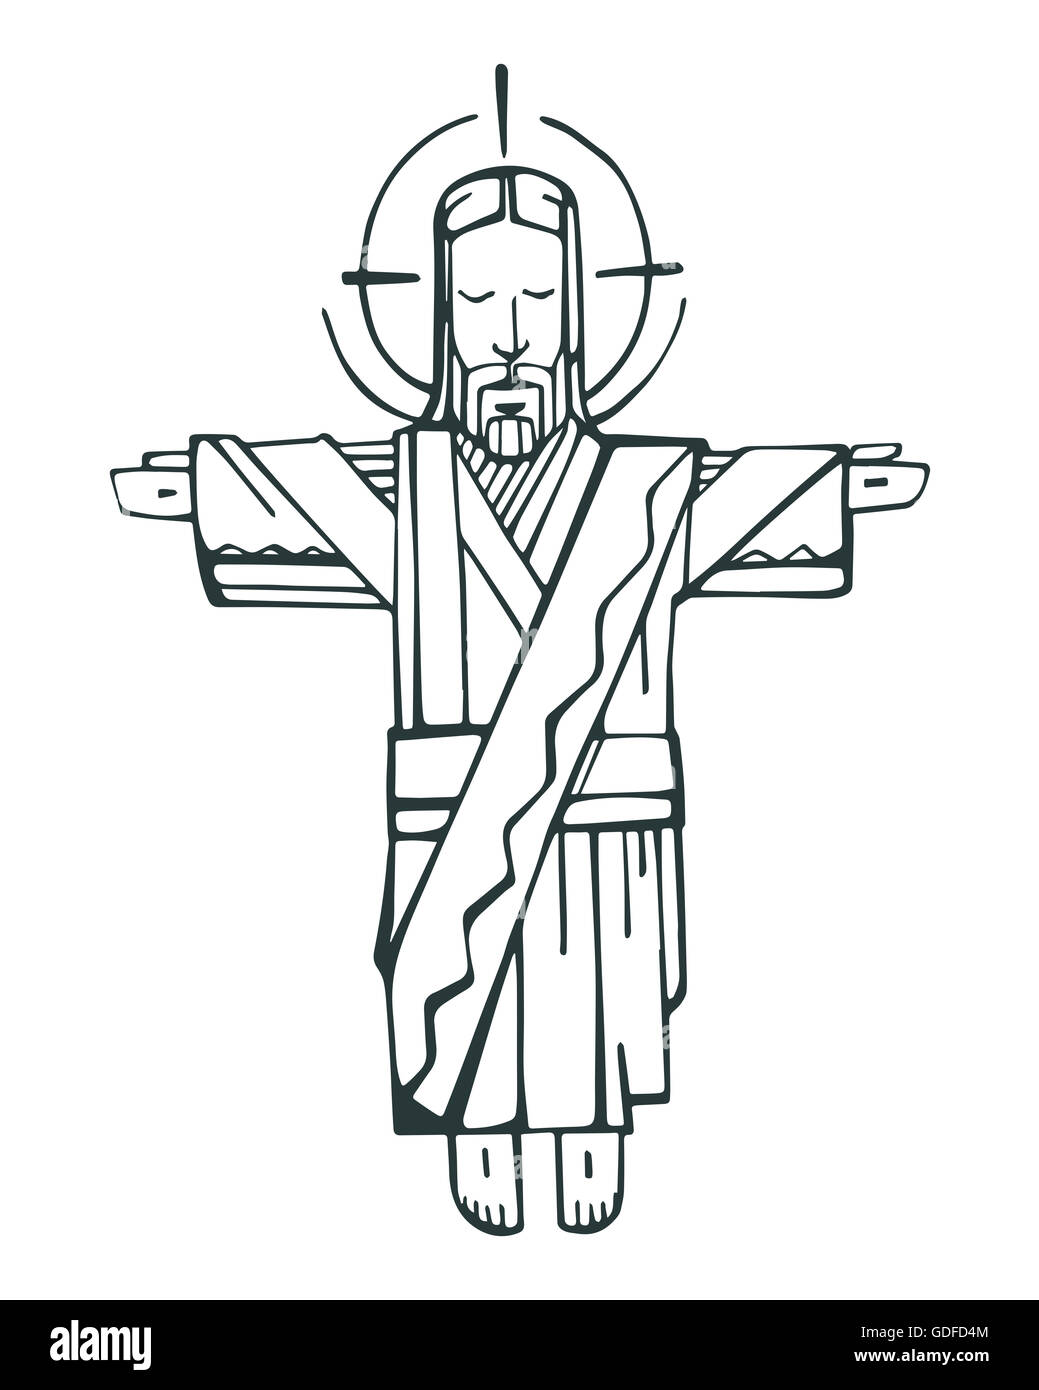 Disegnata a mano illustrazione vettoriale o di disegno di Gesù Cristo con le braccia aperte Foto Stock